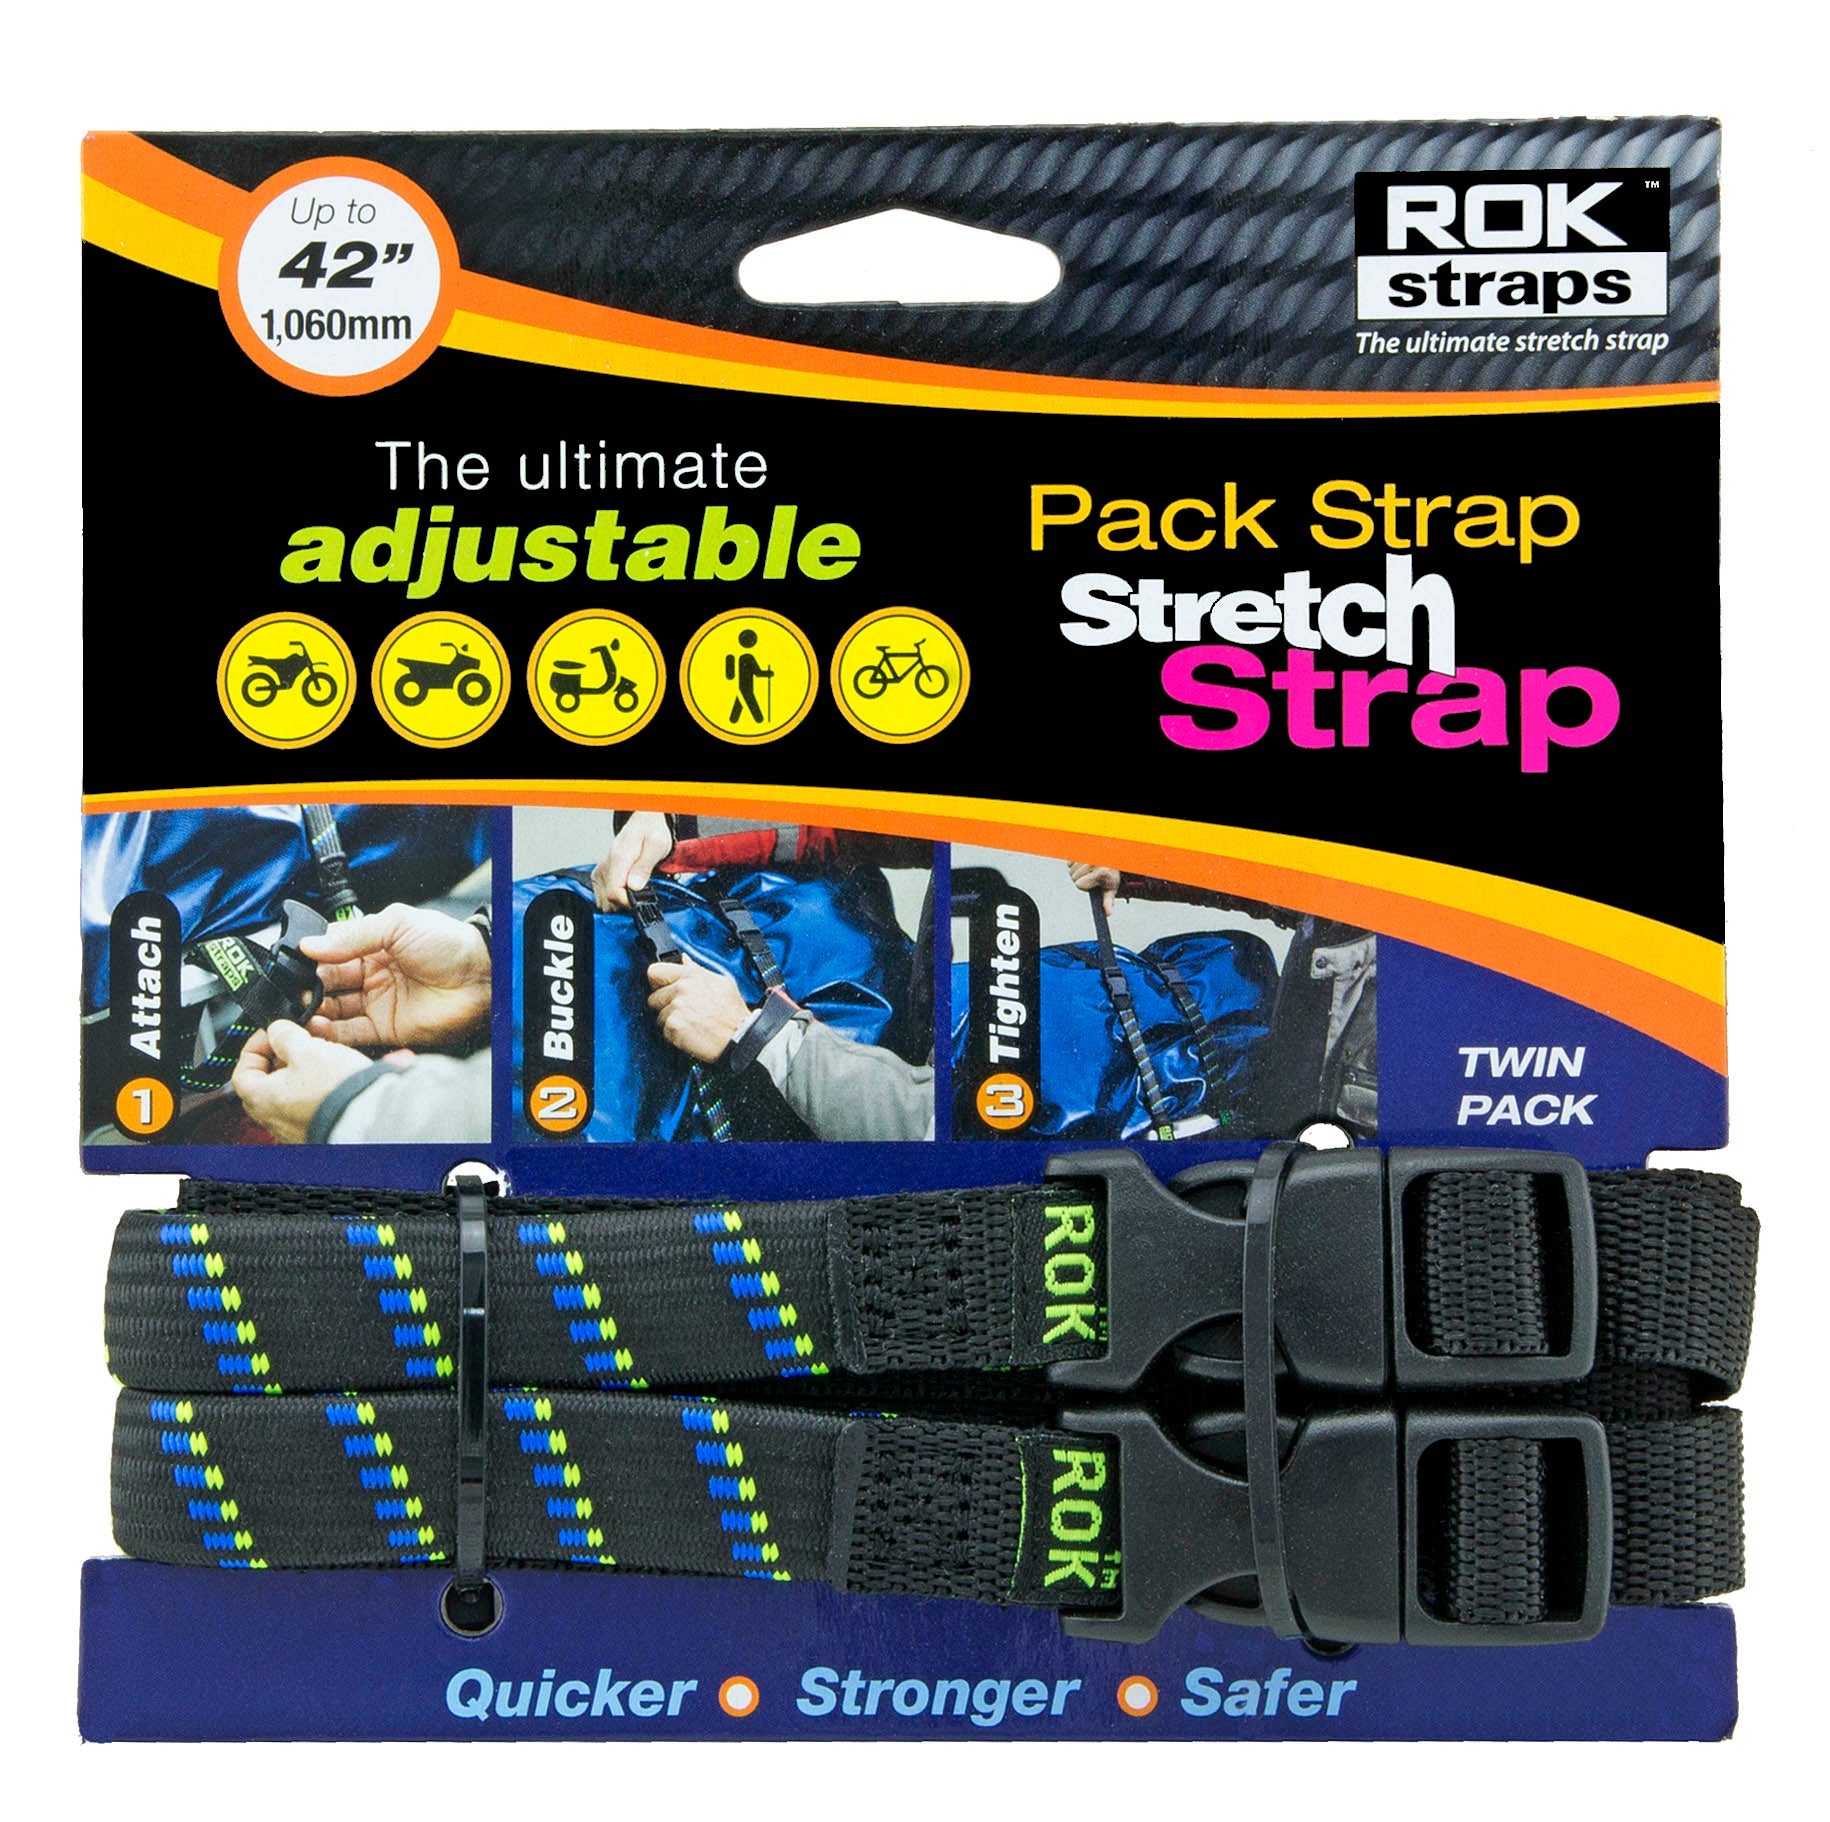 Pack Strap Stretch Strap - 42" - Blue/Green Stripe